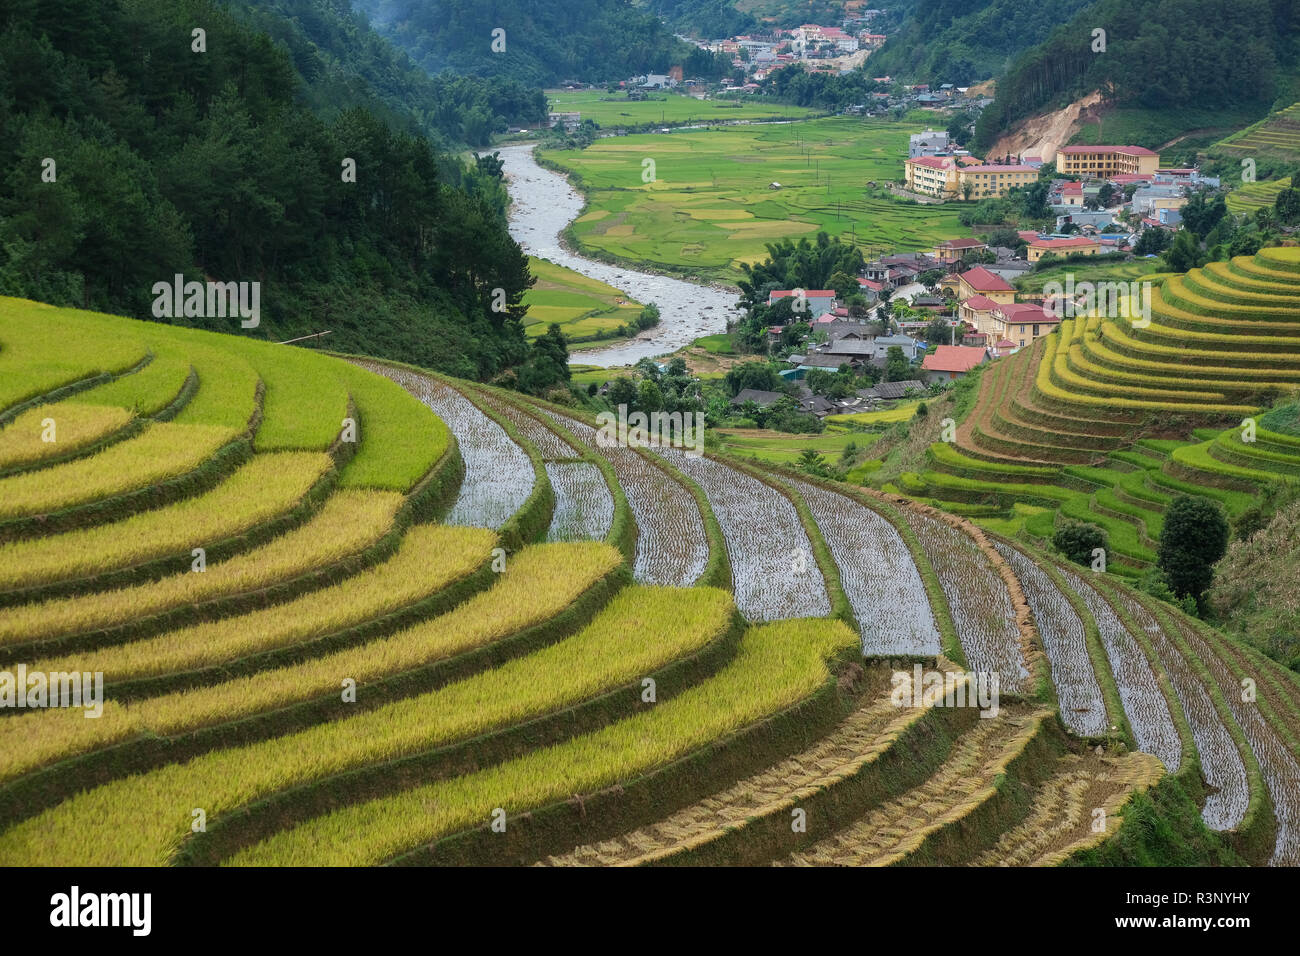 Luftaufnahme von Vietnam Landschaft. Gelber Reis Feld im Dorf, auf dem Land in Vietnam. Royalty hochwertige freie Foto Aufnahmen von gelber Reis f Stockfoto